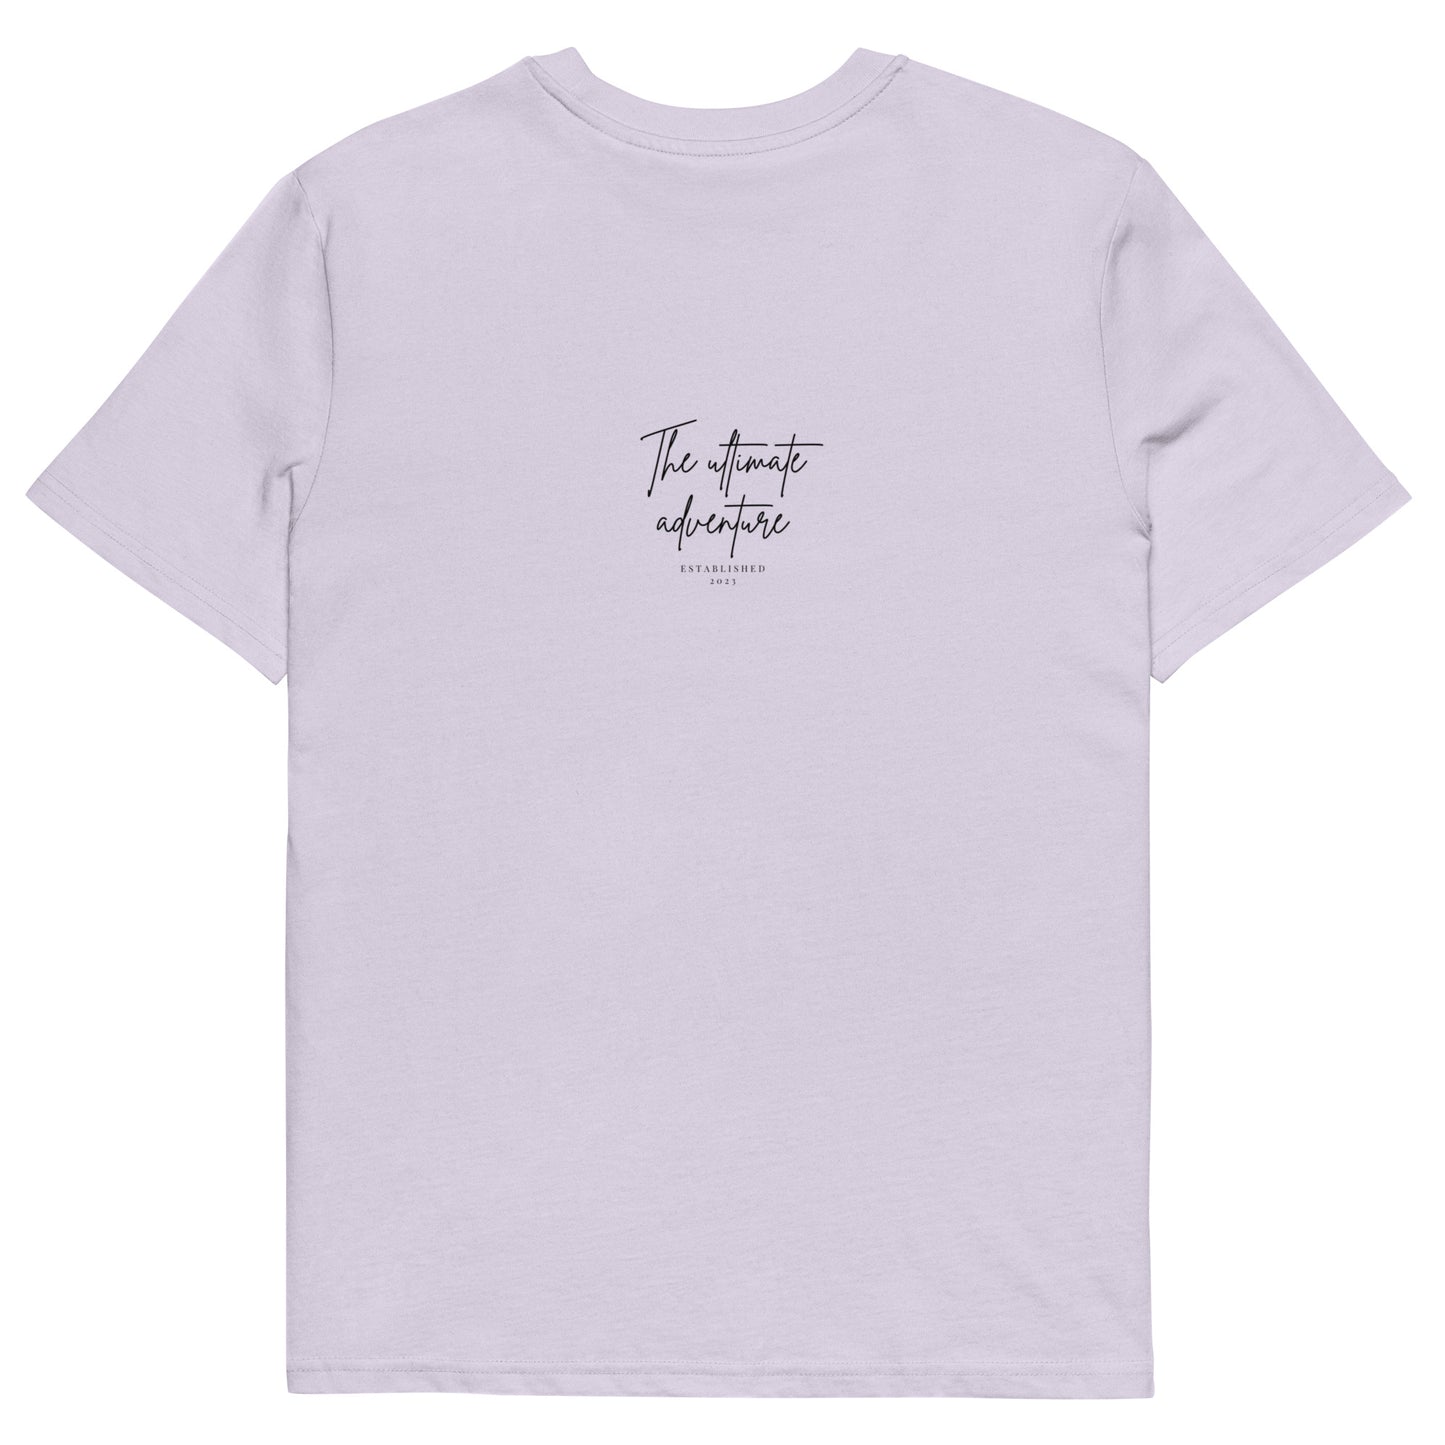 women's organic cotton t-shirt